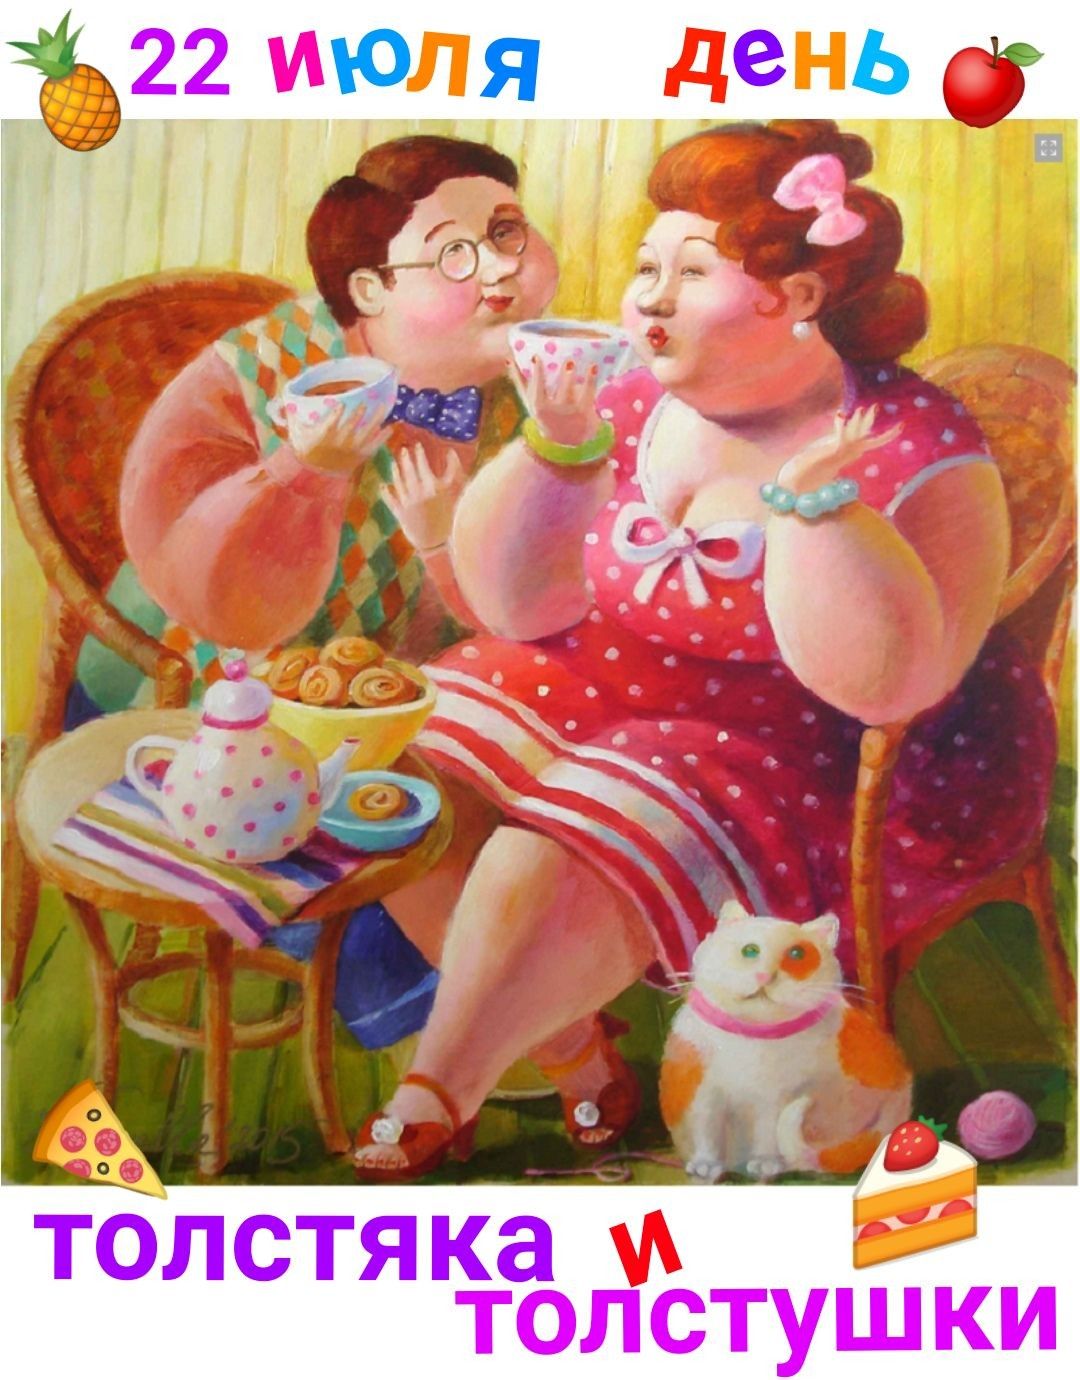 22 июля - День толстяка и толстушки: прикольные открытки, поздравления, стихи с праздником